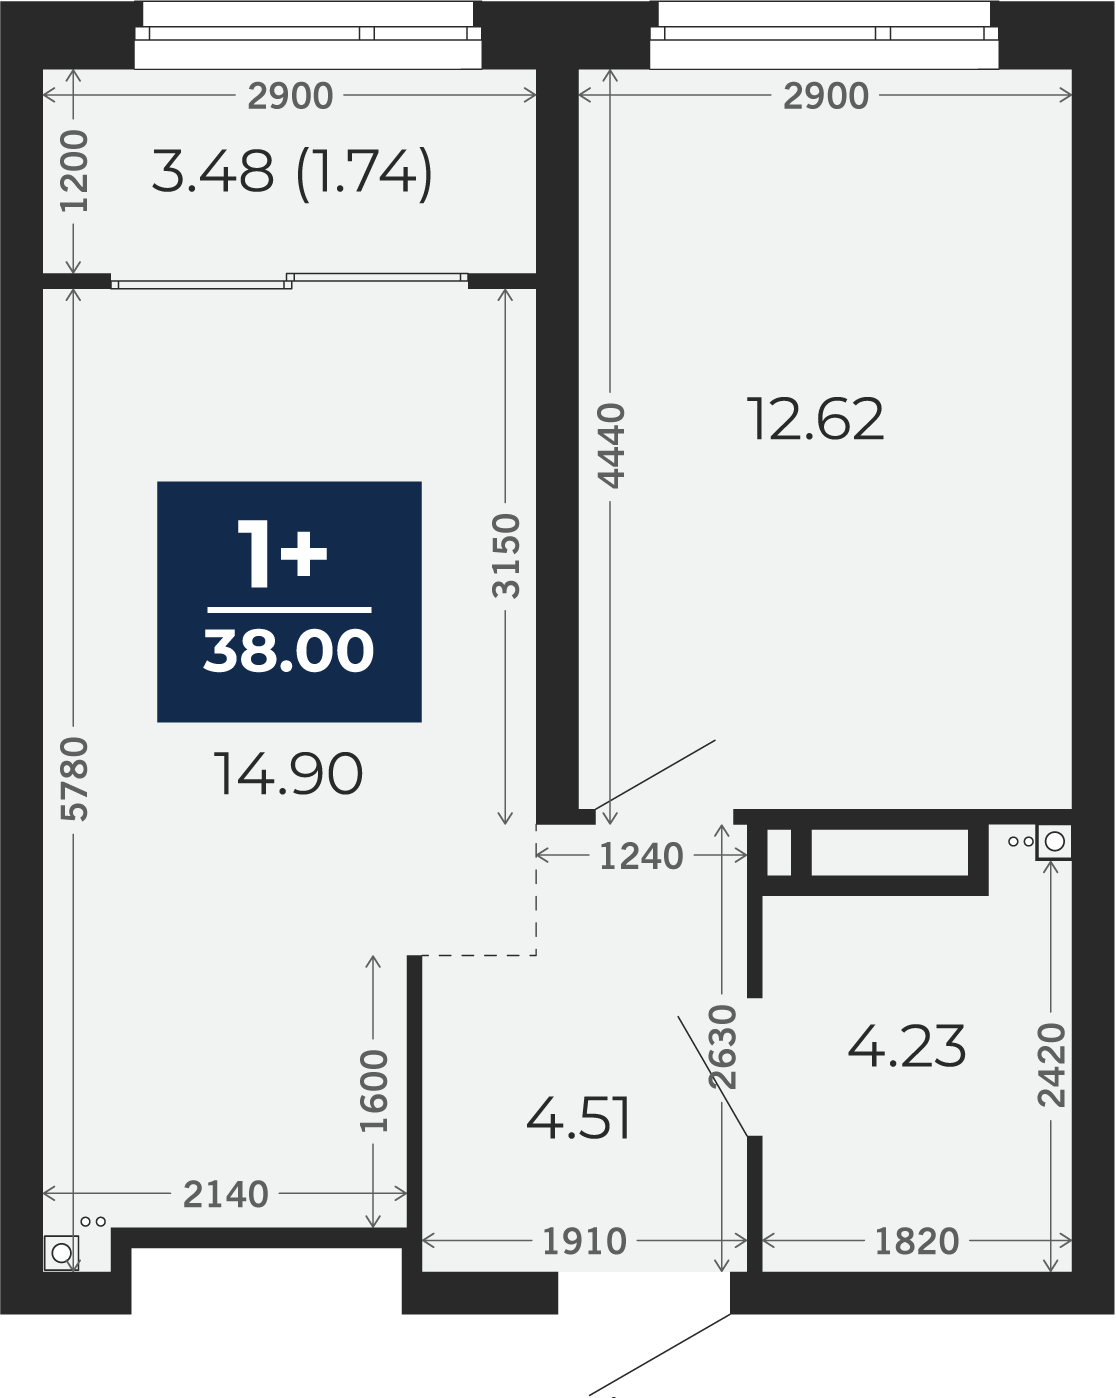 Квартира № 251, 1-комнатная, 38 кв. м, 15 этаж